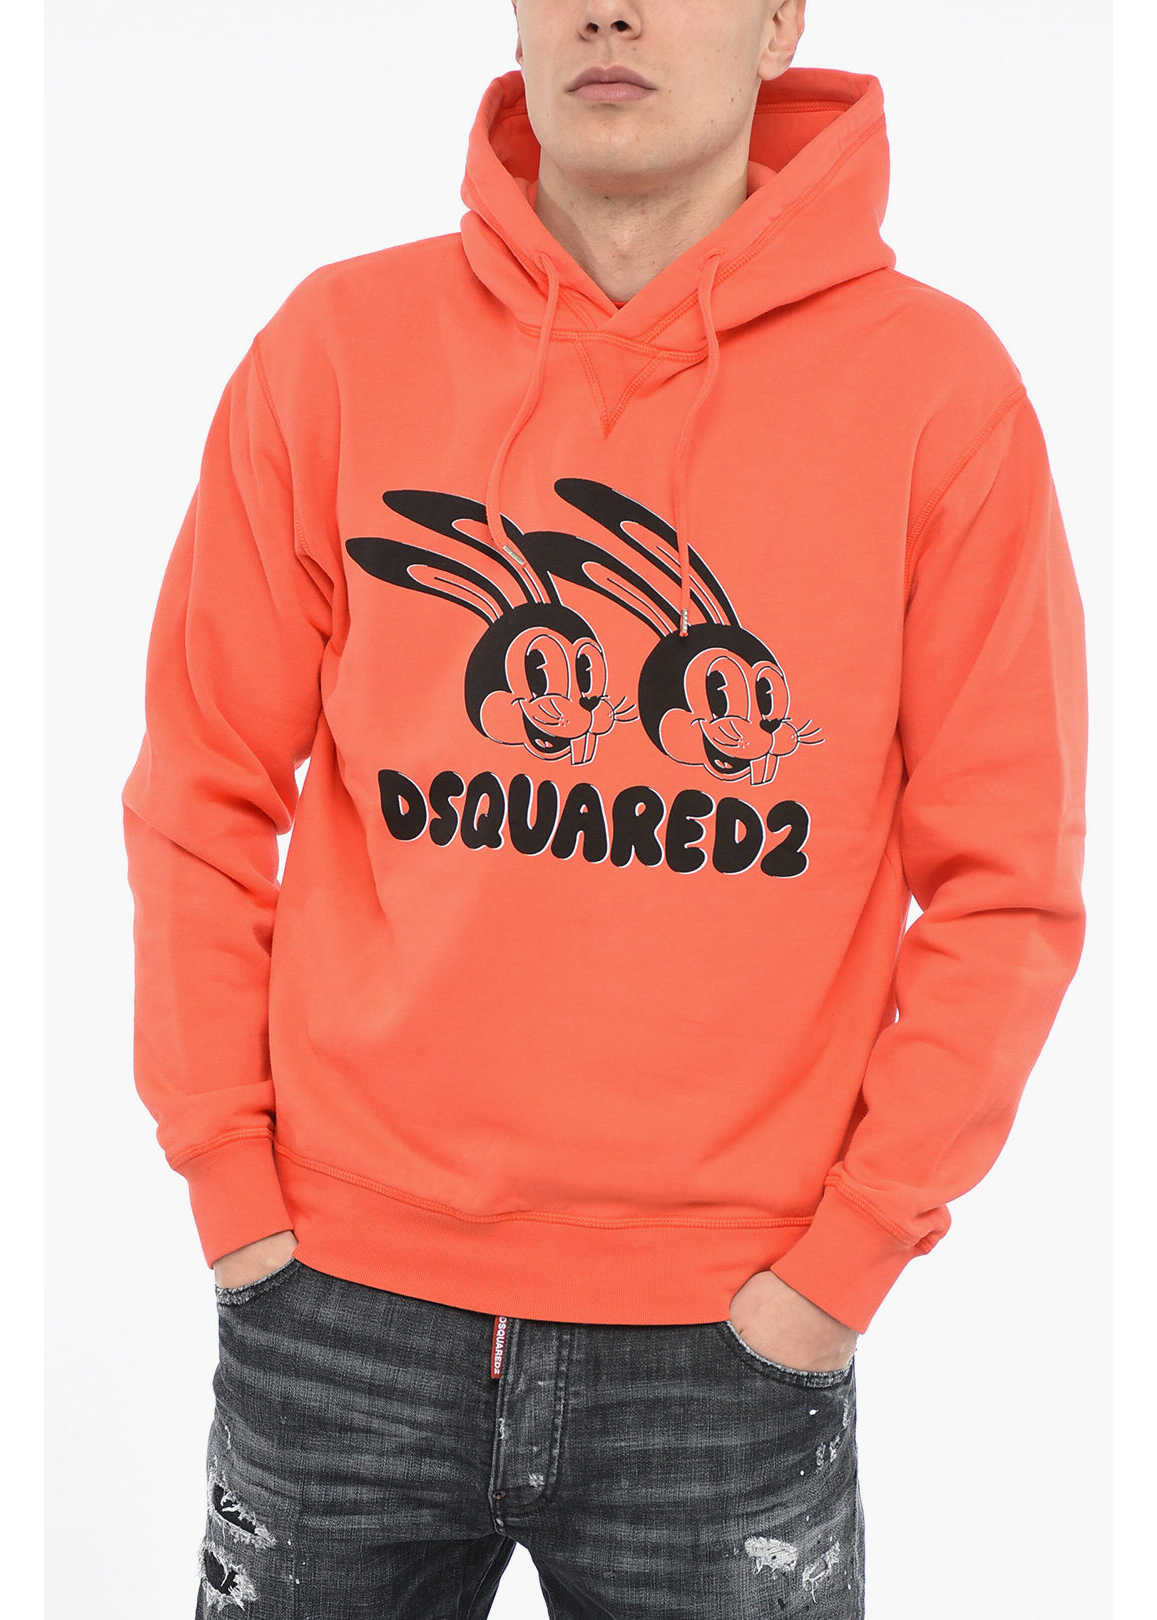 DSQUARED2 Lunar N.y. Hoodie Sweatshirt With Print Orange